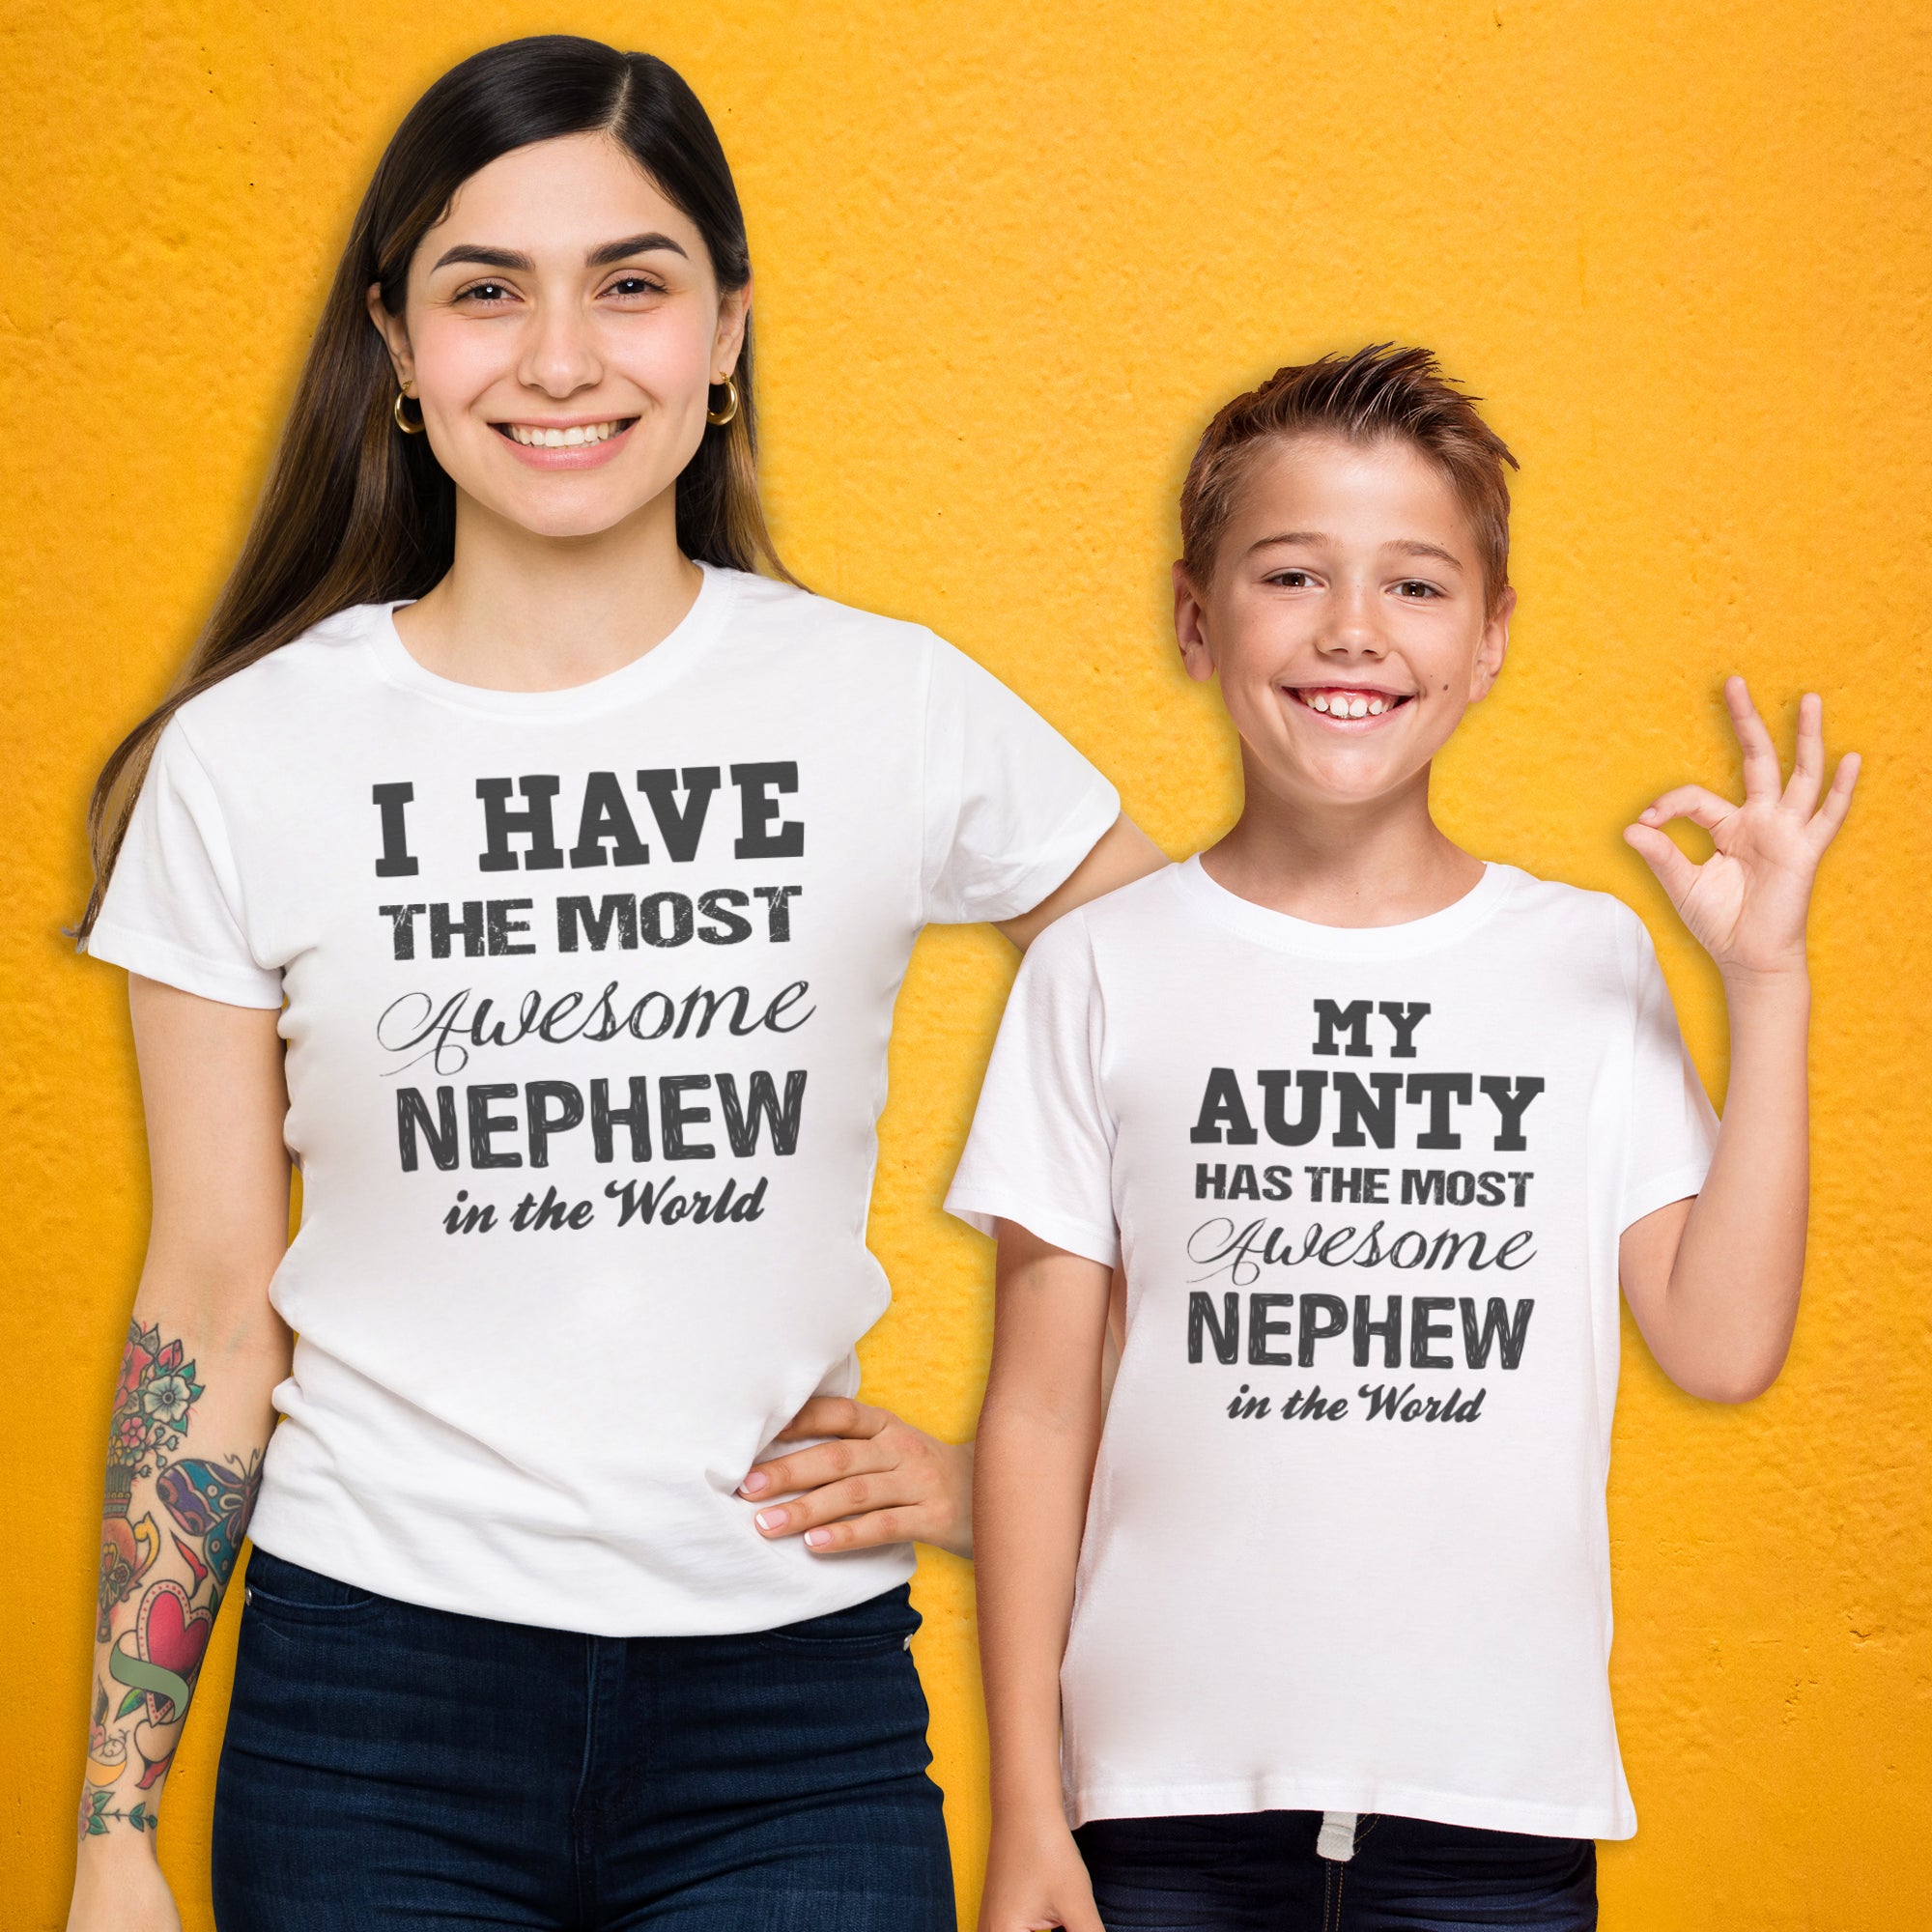 Awesome Nephew - Aunty T - Shirt & Kids T - Shirt